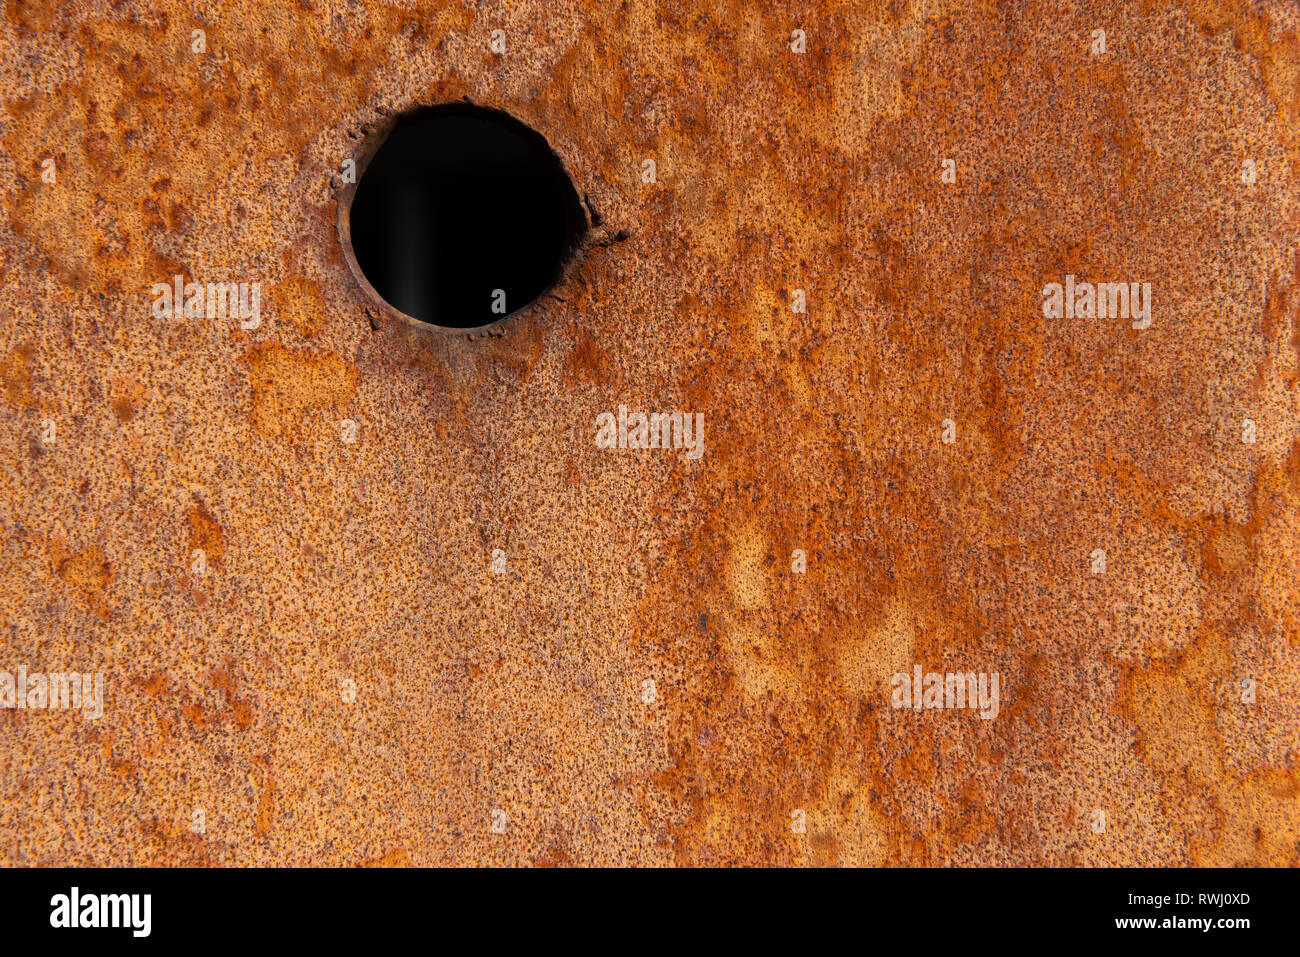 Alte Distressed Brown Terracotta Kupfer Rusty Stein mit groben Textur bunte Einschlüsse. Gebeizt Gradient Grob körnige Oberfläche Stockfoto